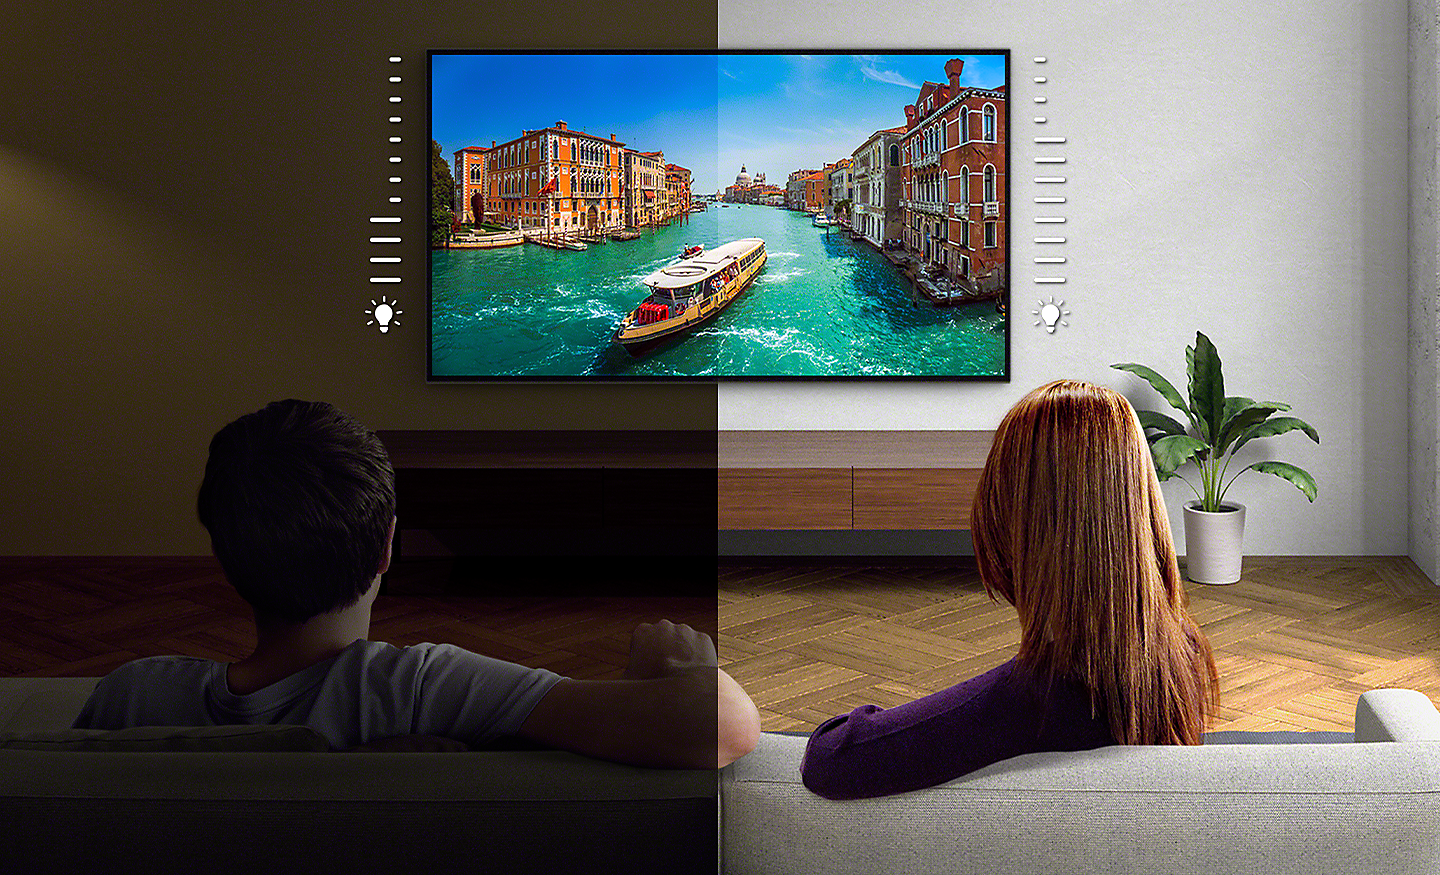 Gambar layar terbagi dari pasangan yang sedang menonton TV - sisi kiri lebih gelap dari sisi kanan